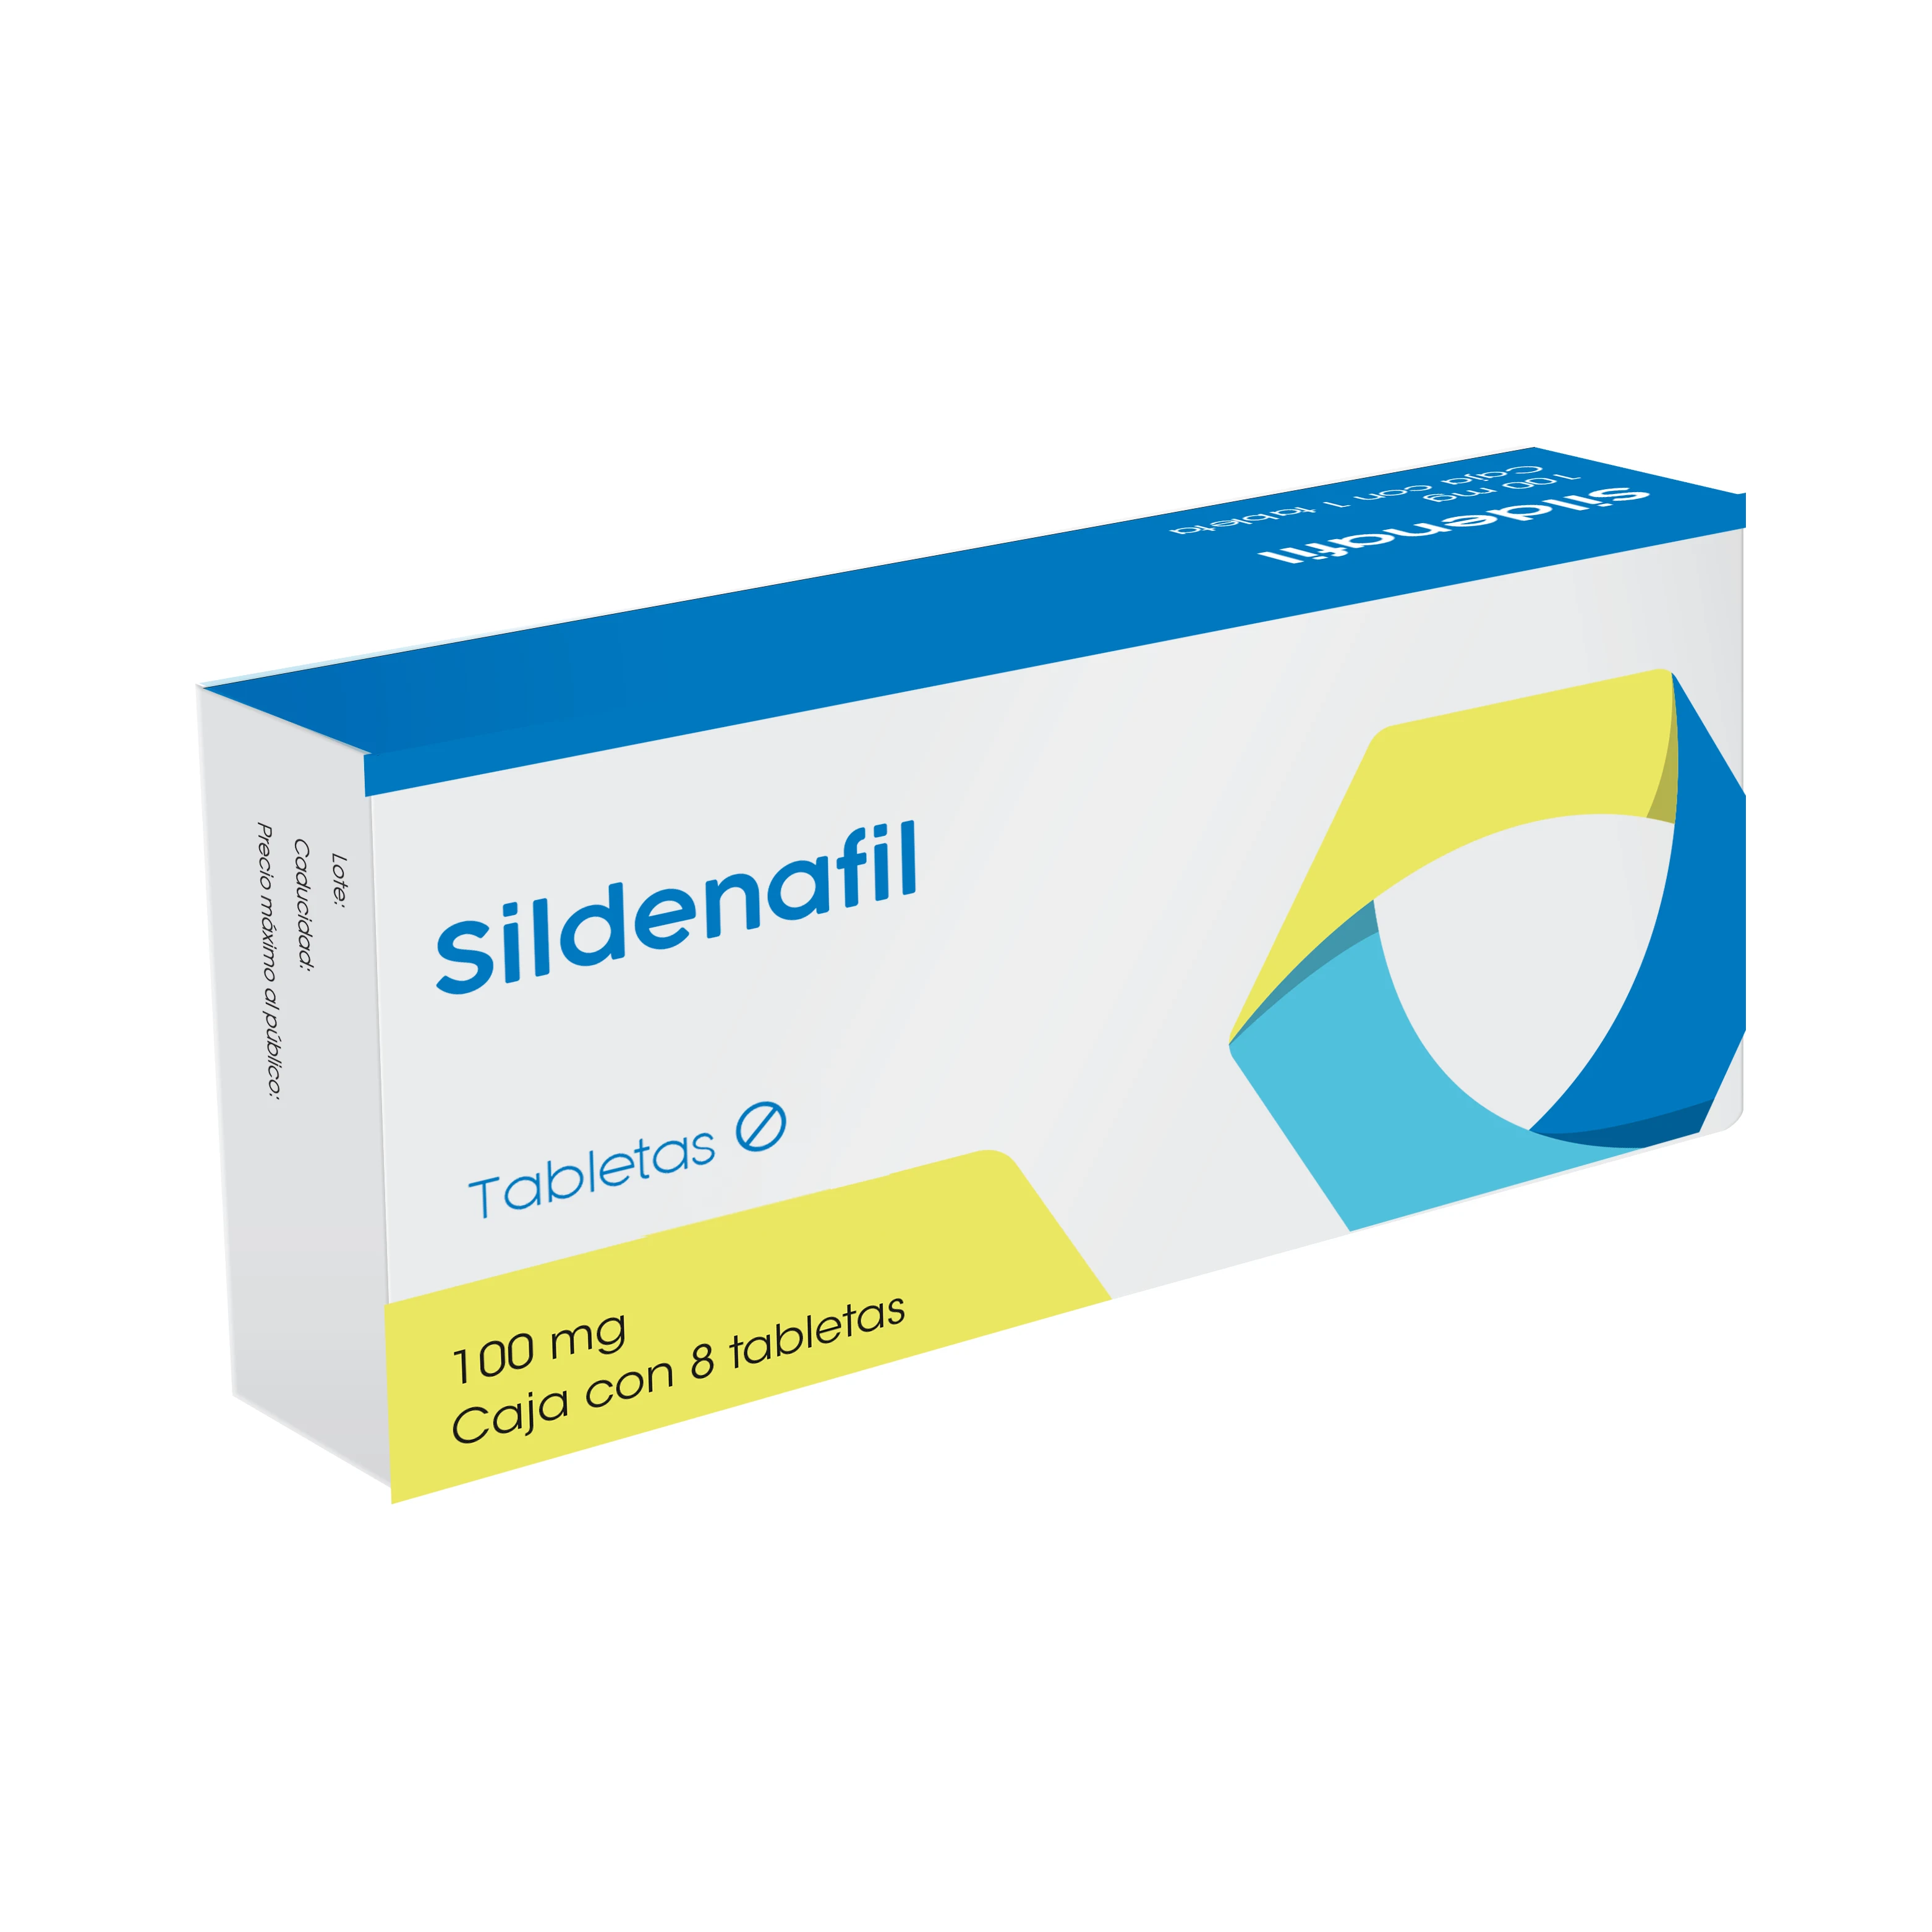 Comprar Sildenafil 100 Mg Con 8 Tabletas